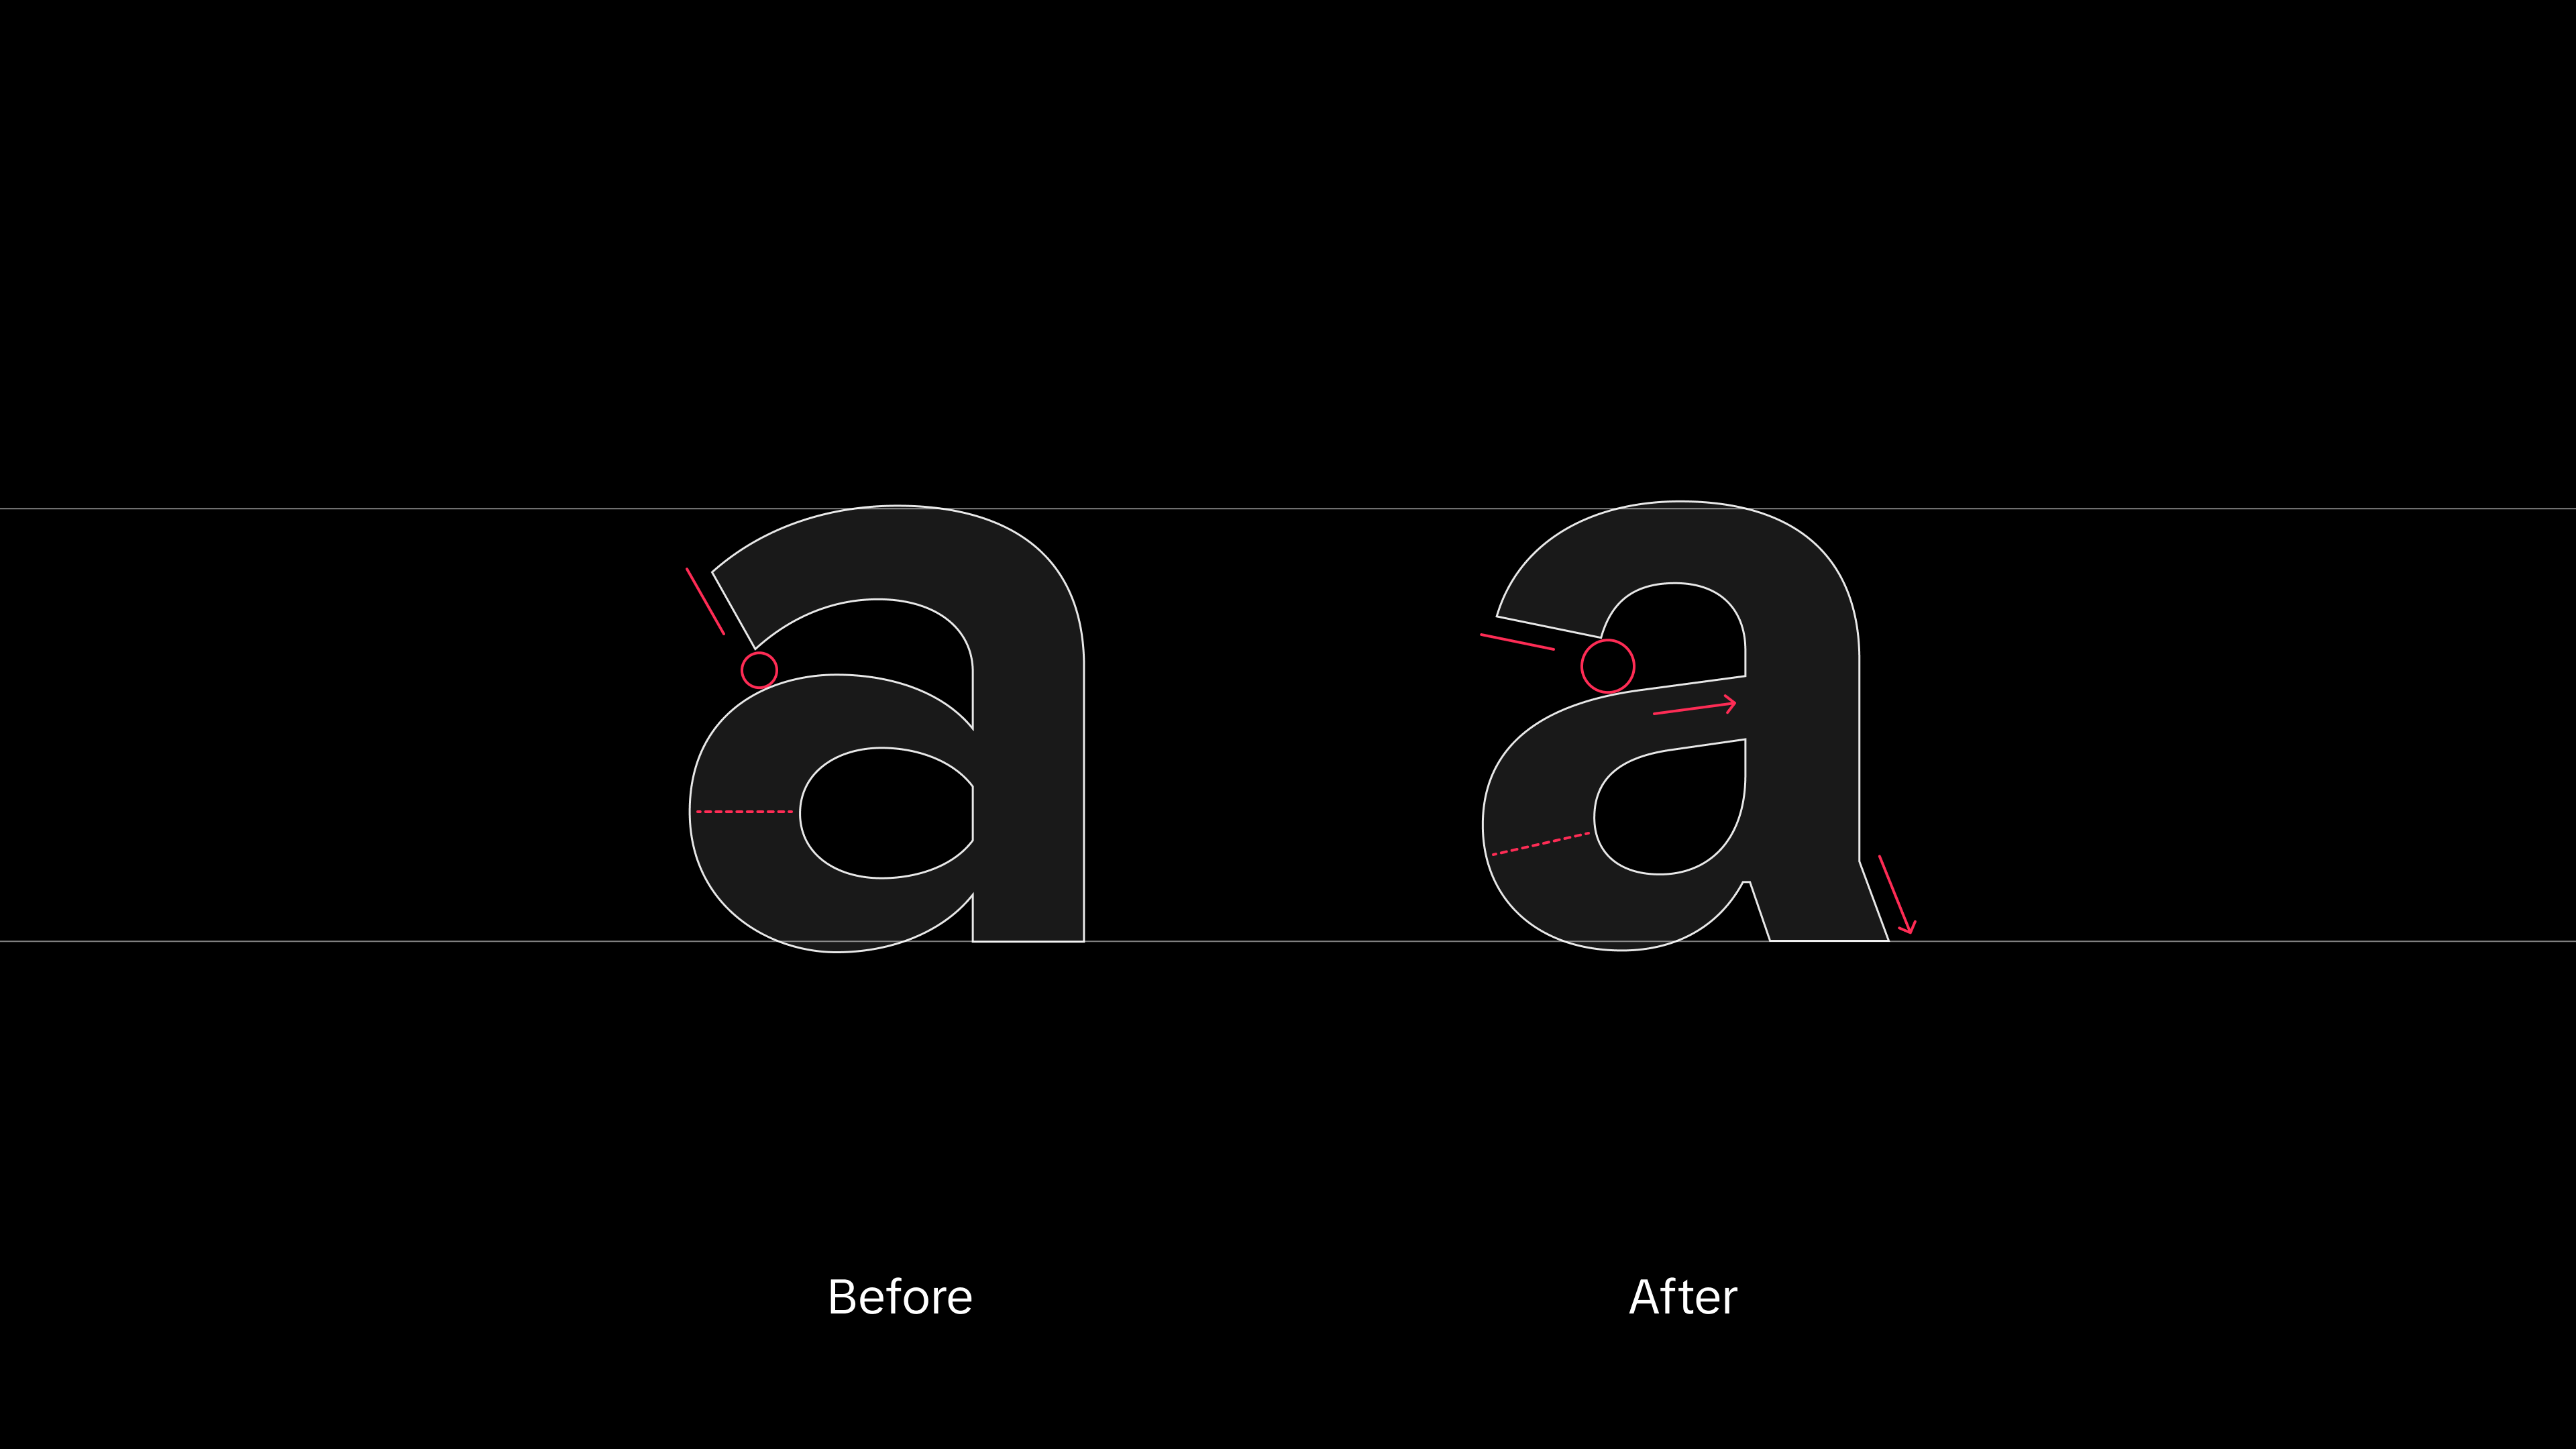 Introducing TikTok Sans: TikTok's new bespoke typeface - TikTok Newsroom